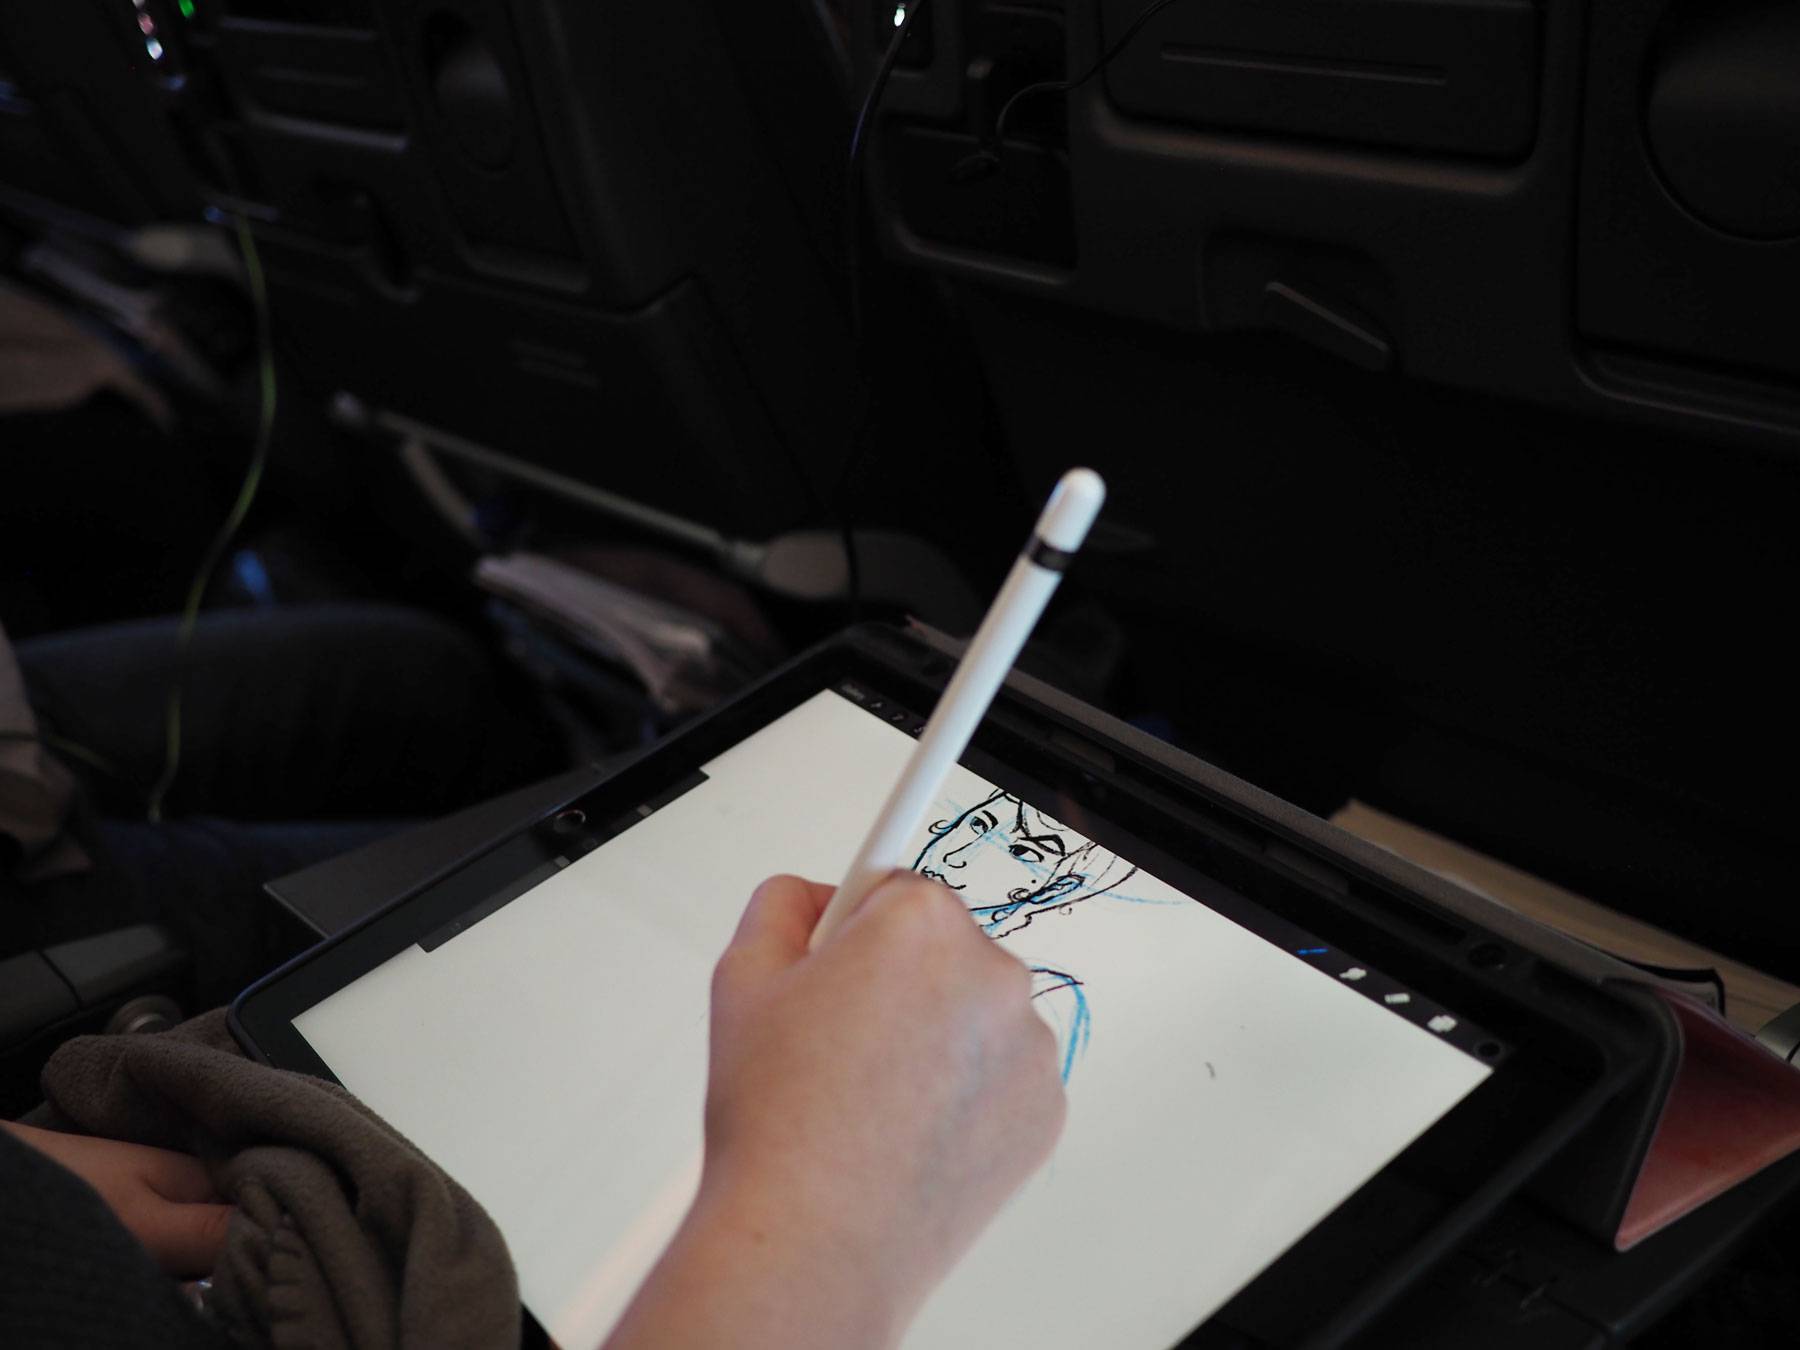 Alyssa sketching on flight